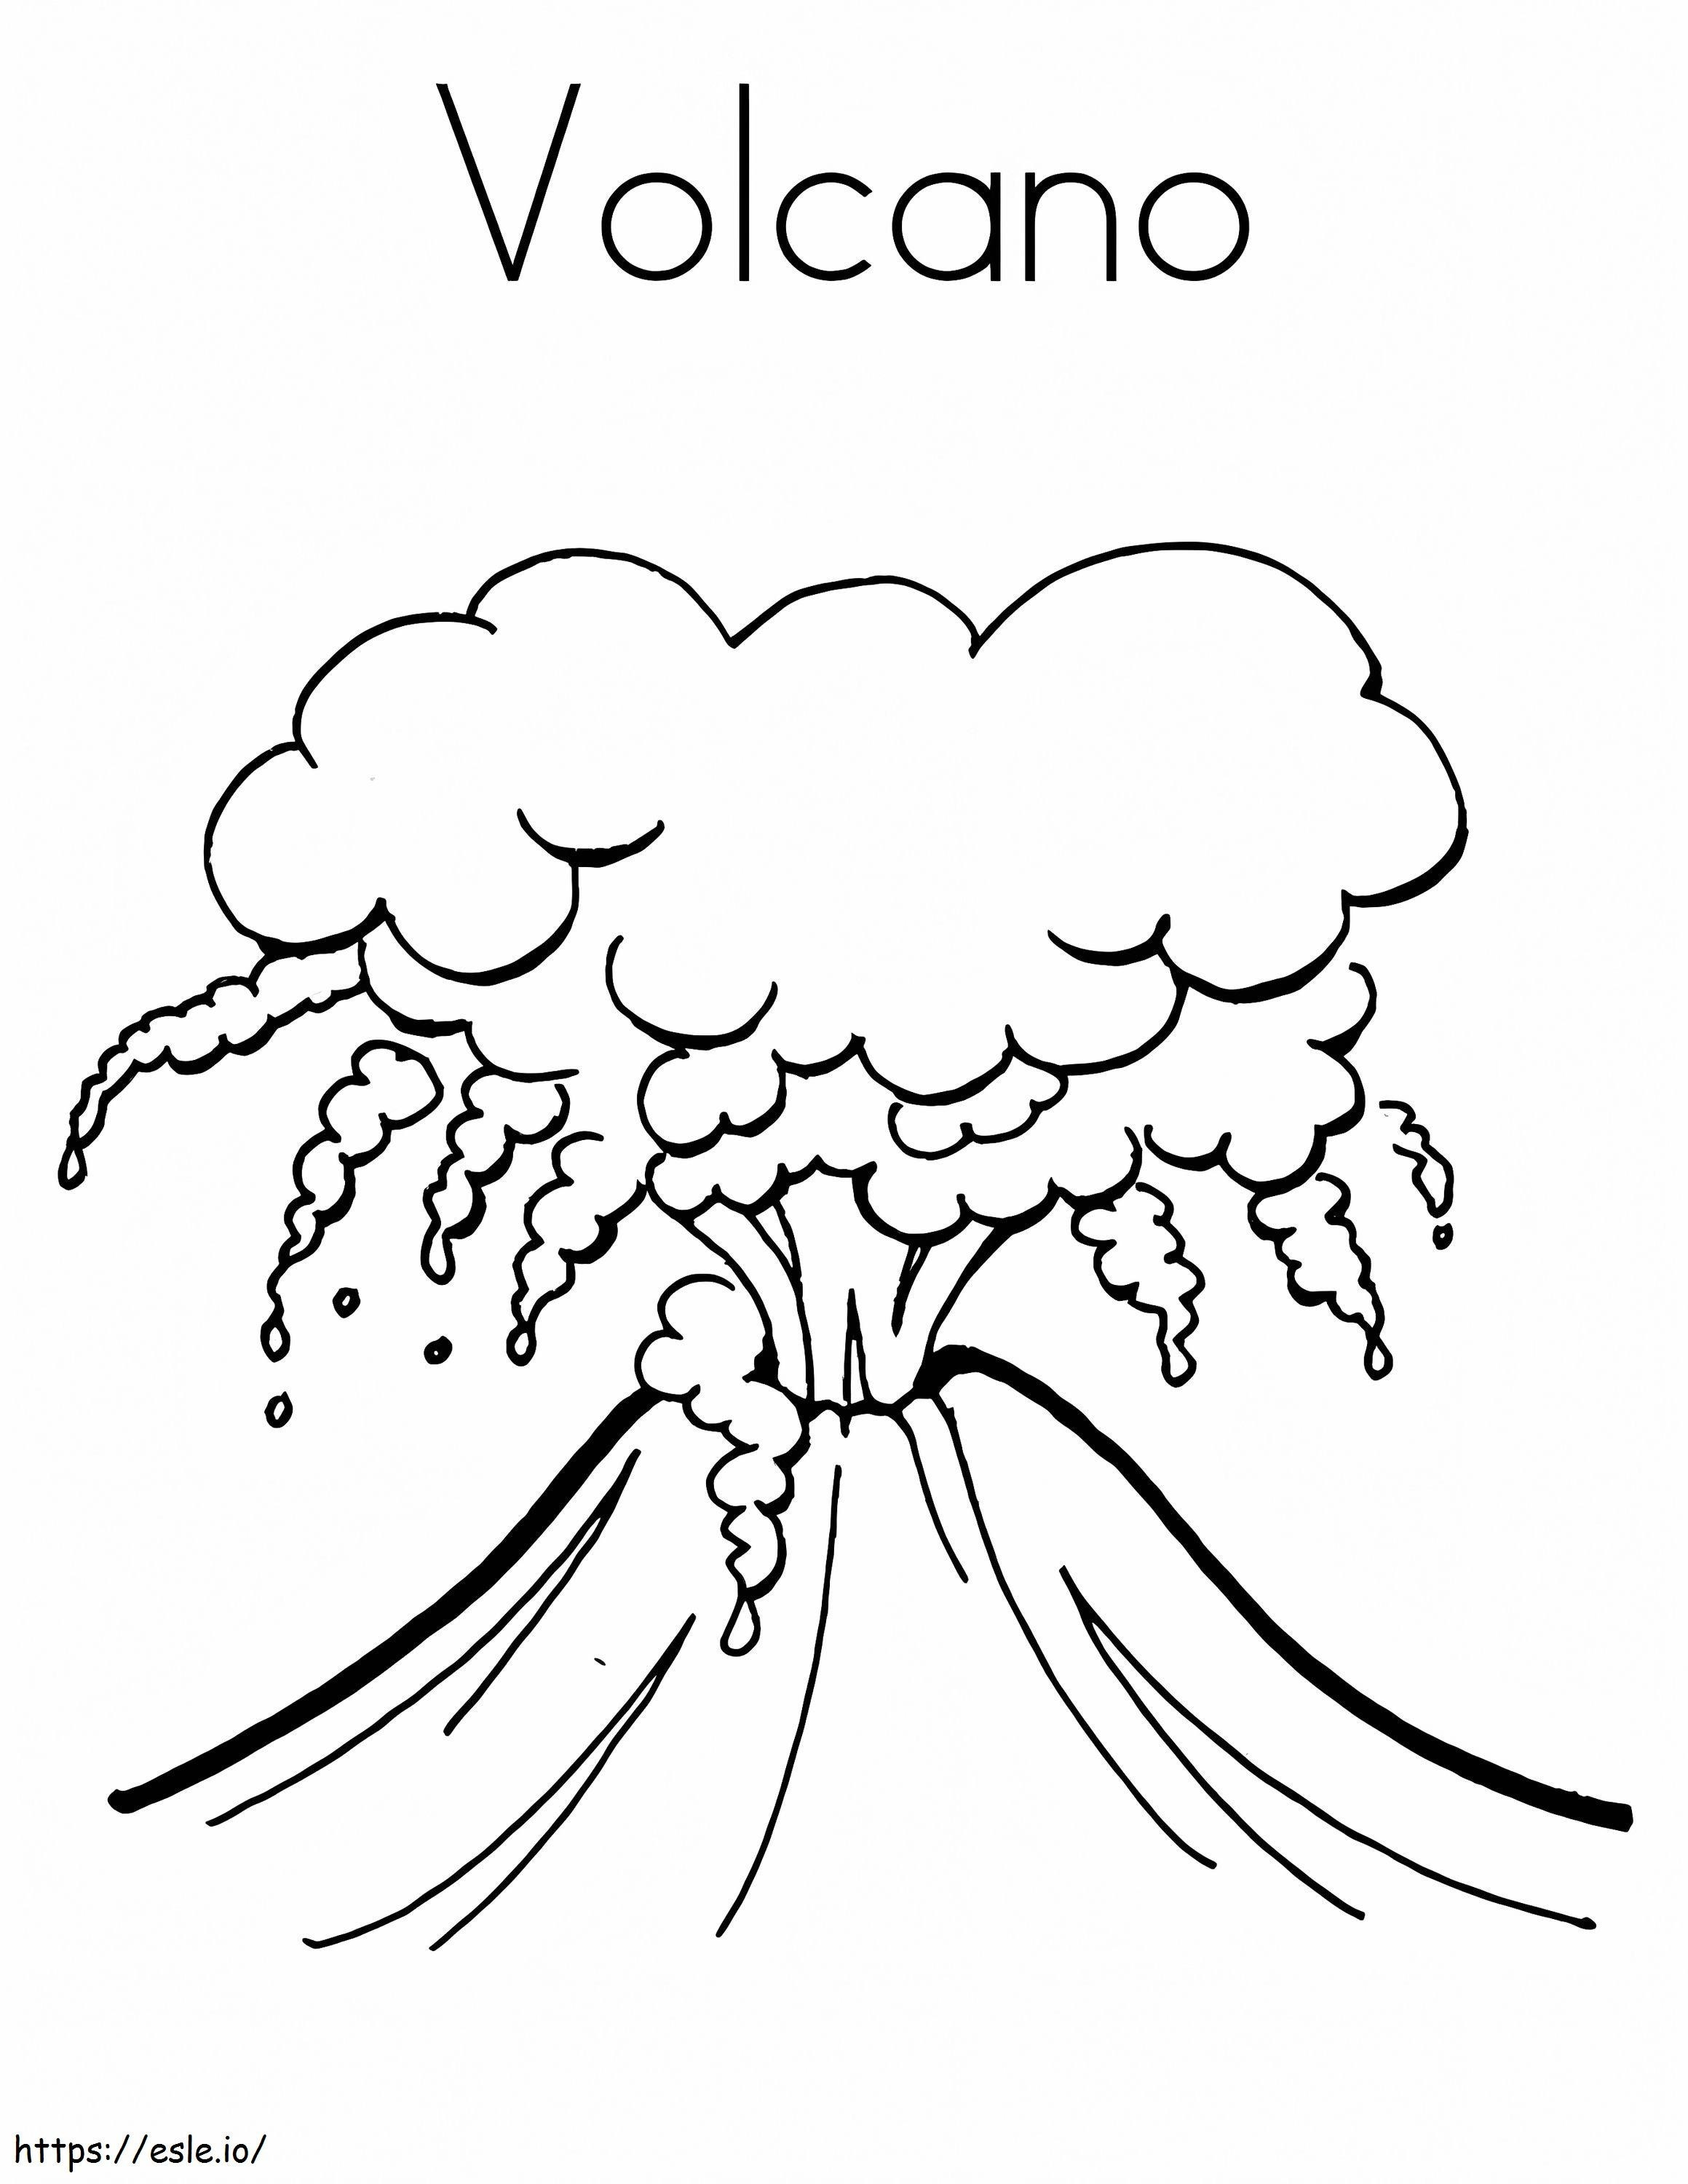 Der Schlackenkegel-Vulkan ausmalbilder